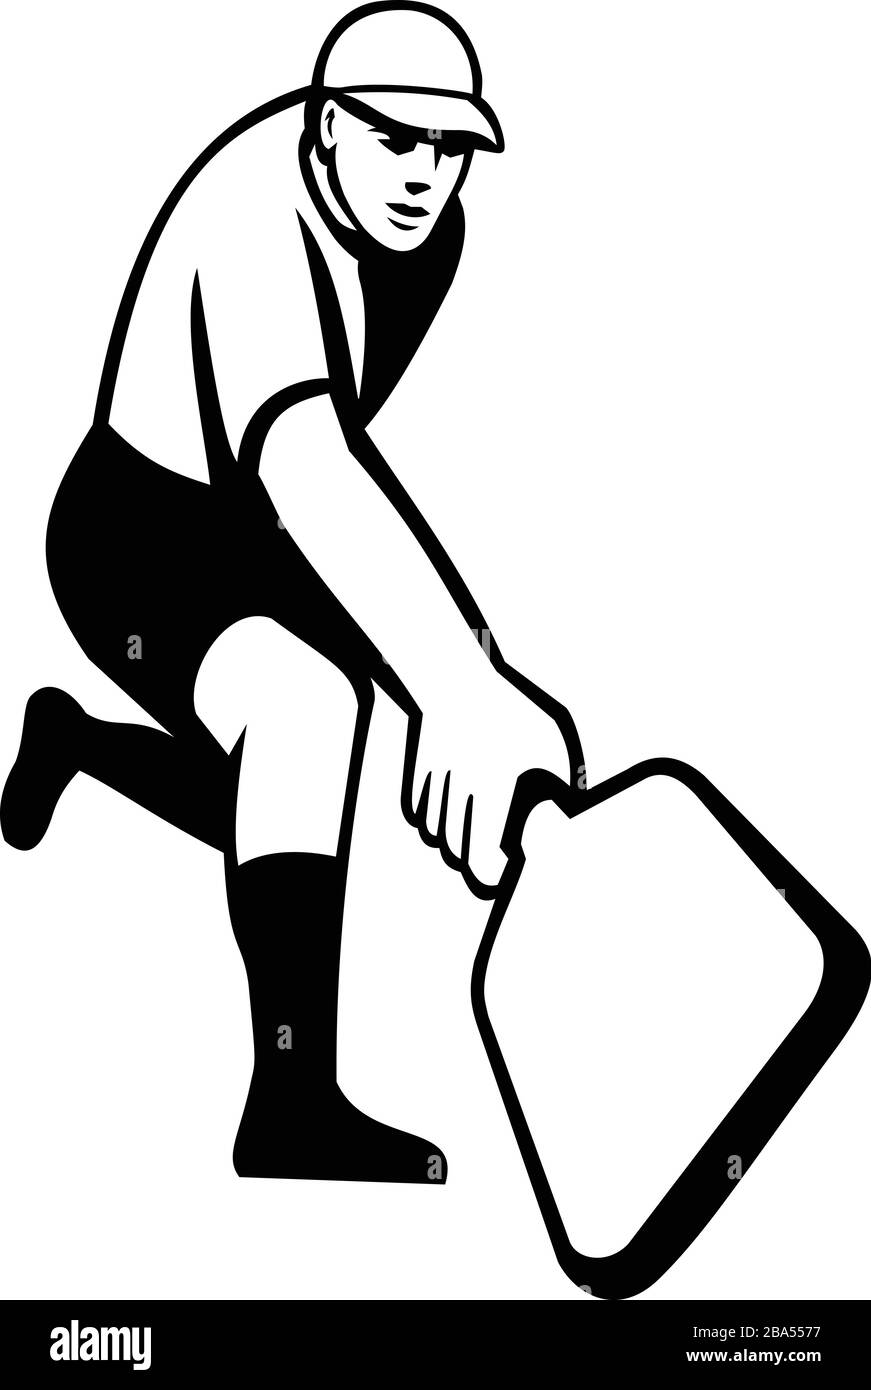 Icona Mascot illustrazione di un giocatore di pickleball, uno sport di paddleball simile a uno sport di racchetta, mano posteriore singola vista dalla parte anteriore su whi isolato Illustrazione Vettoriale